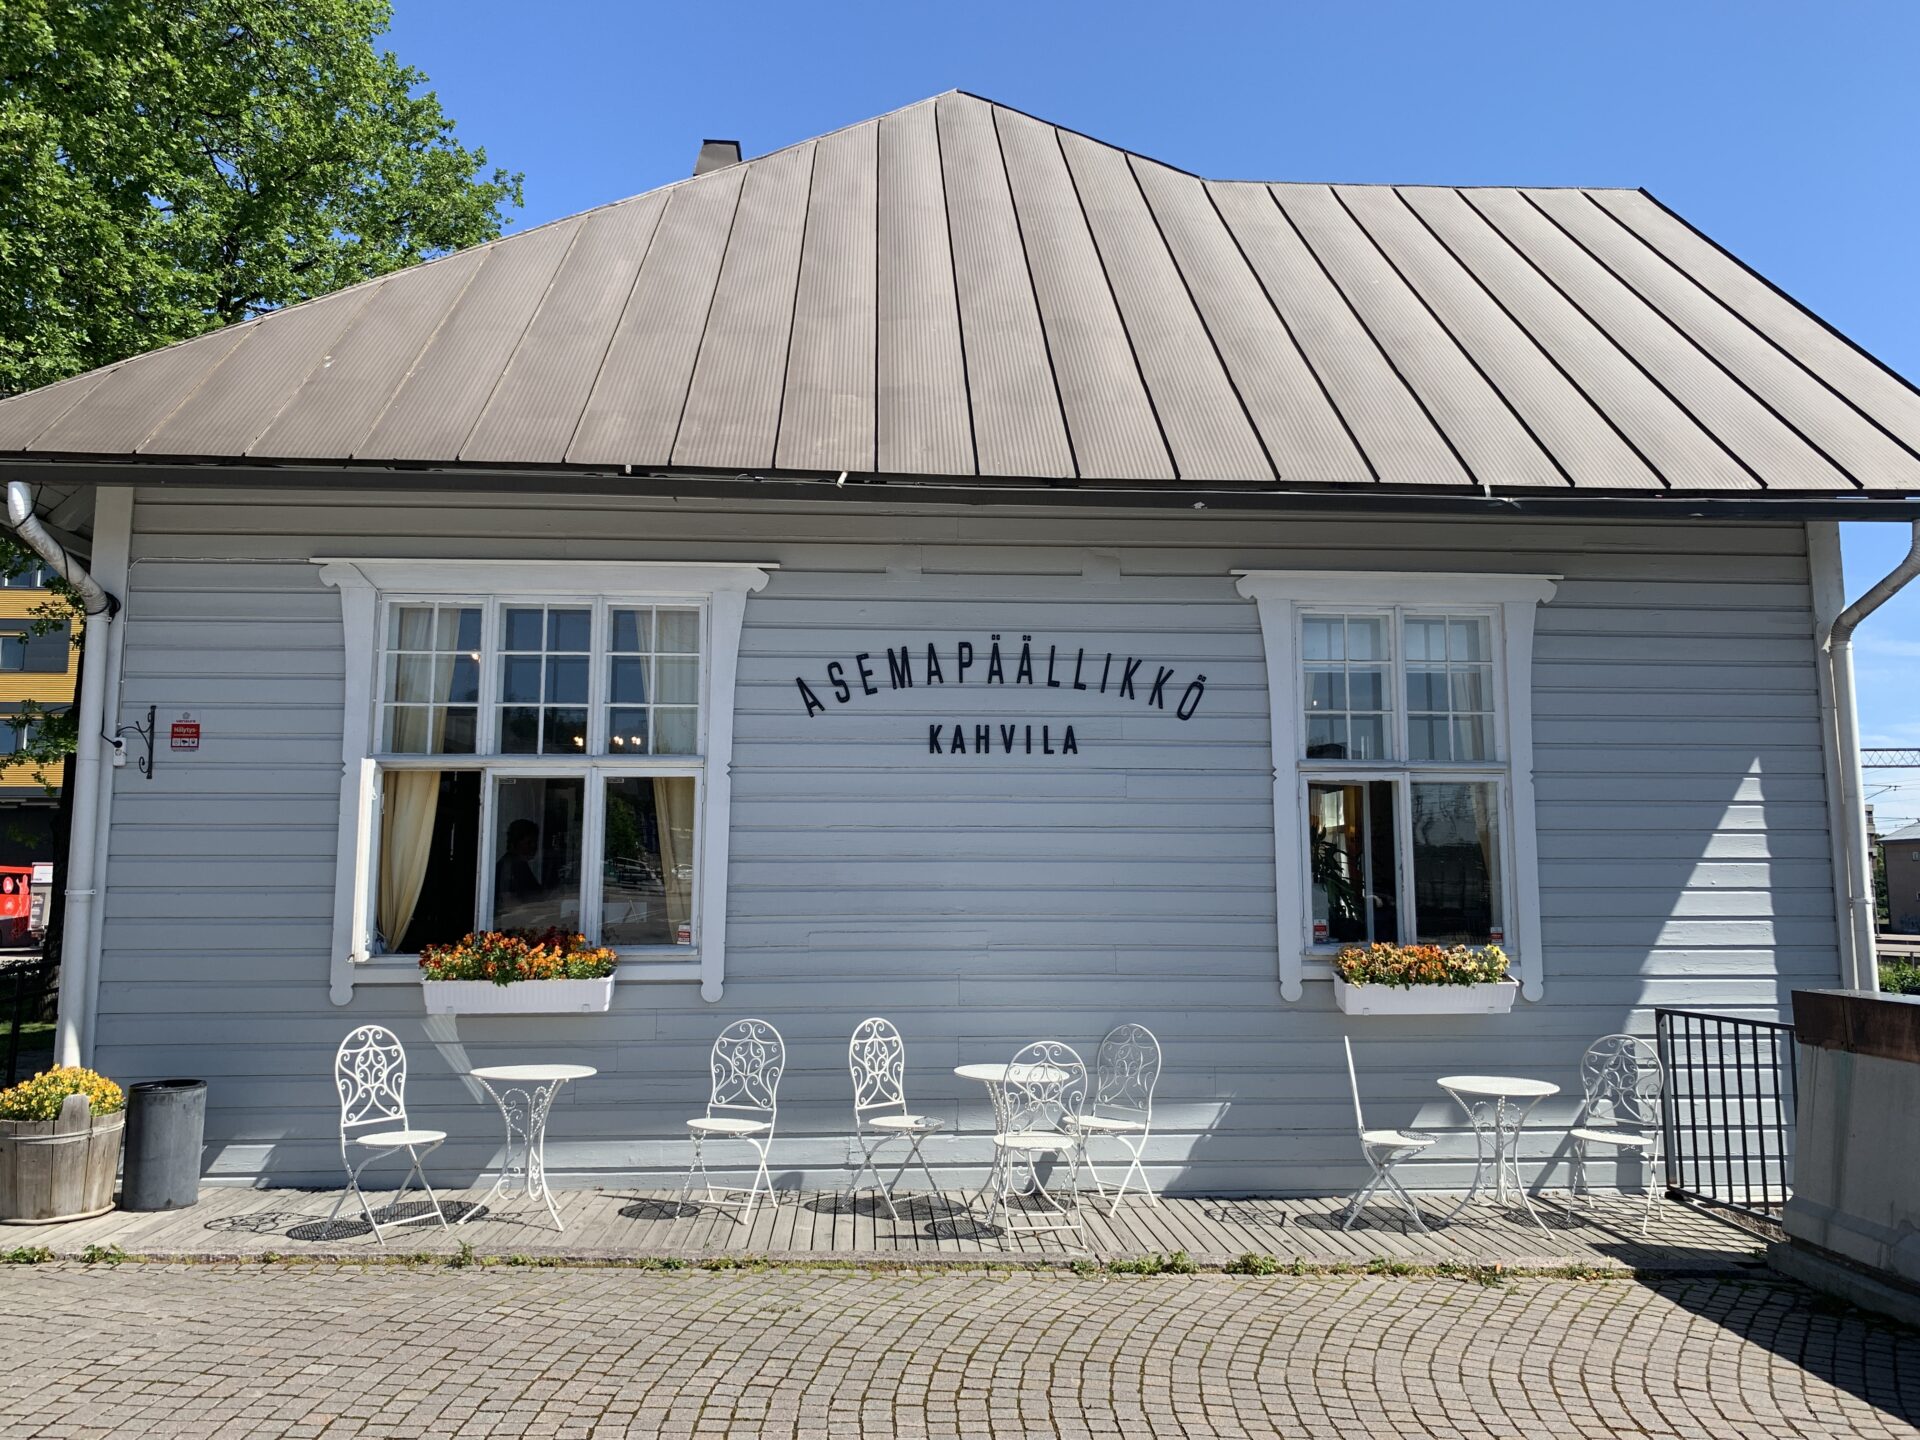 Asemapäällikkö, Lahti – One of the 30 loveliest cafes in Finland